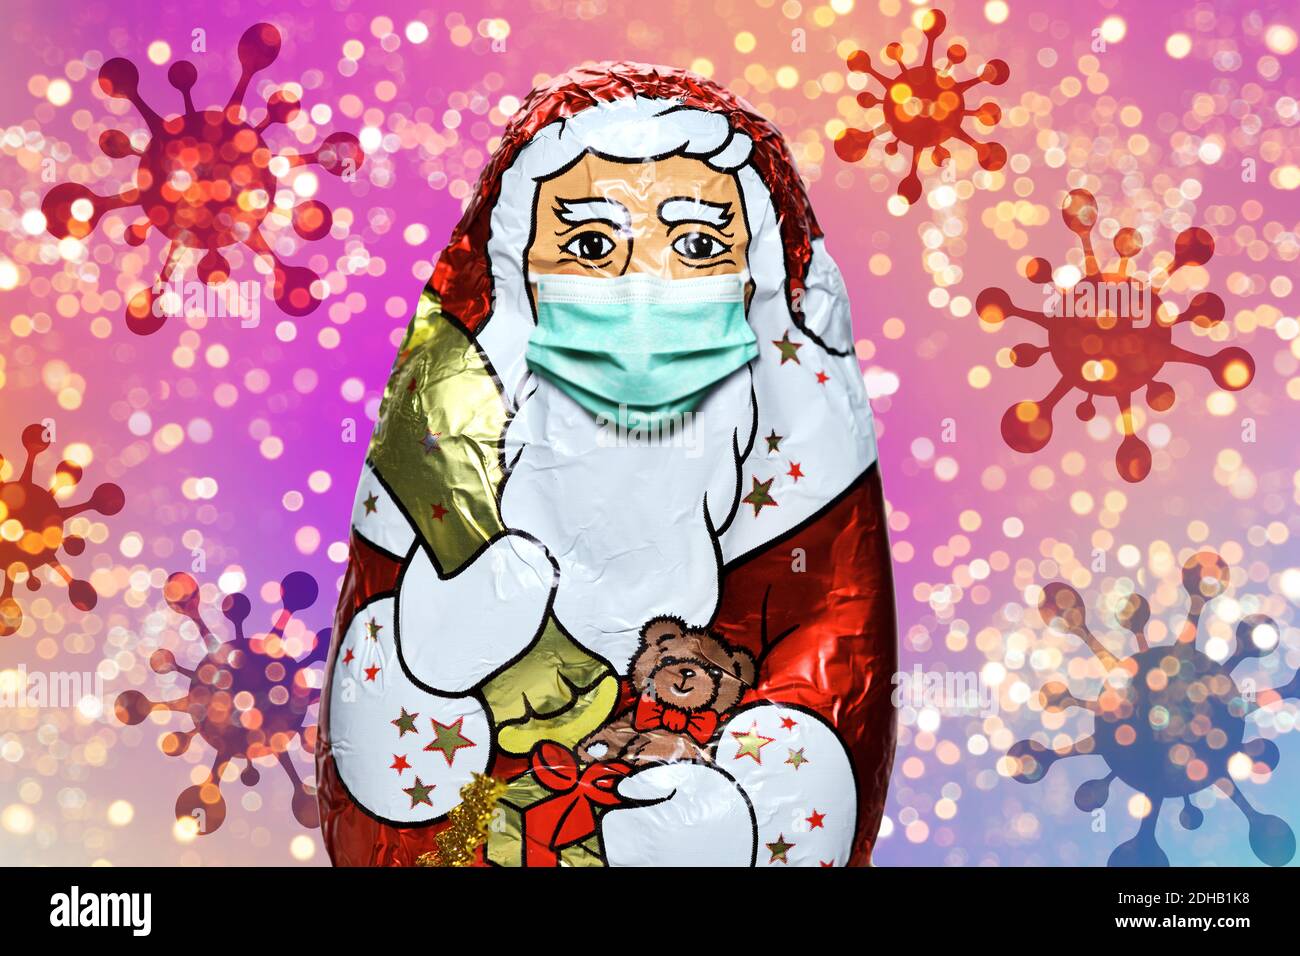 FOTOMONTAGE, Schoko-Weihnachtsmann mit Schutzmaske und Coronaviren, Weihnachtsfest zu Corona-Zeiten und Corona-Beschränkungen Stock Photo